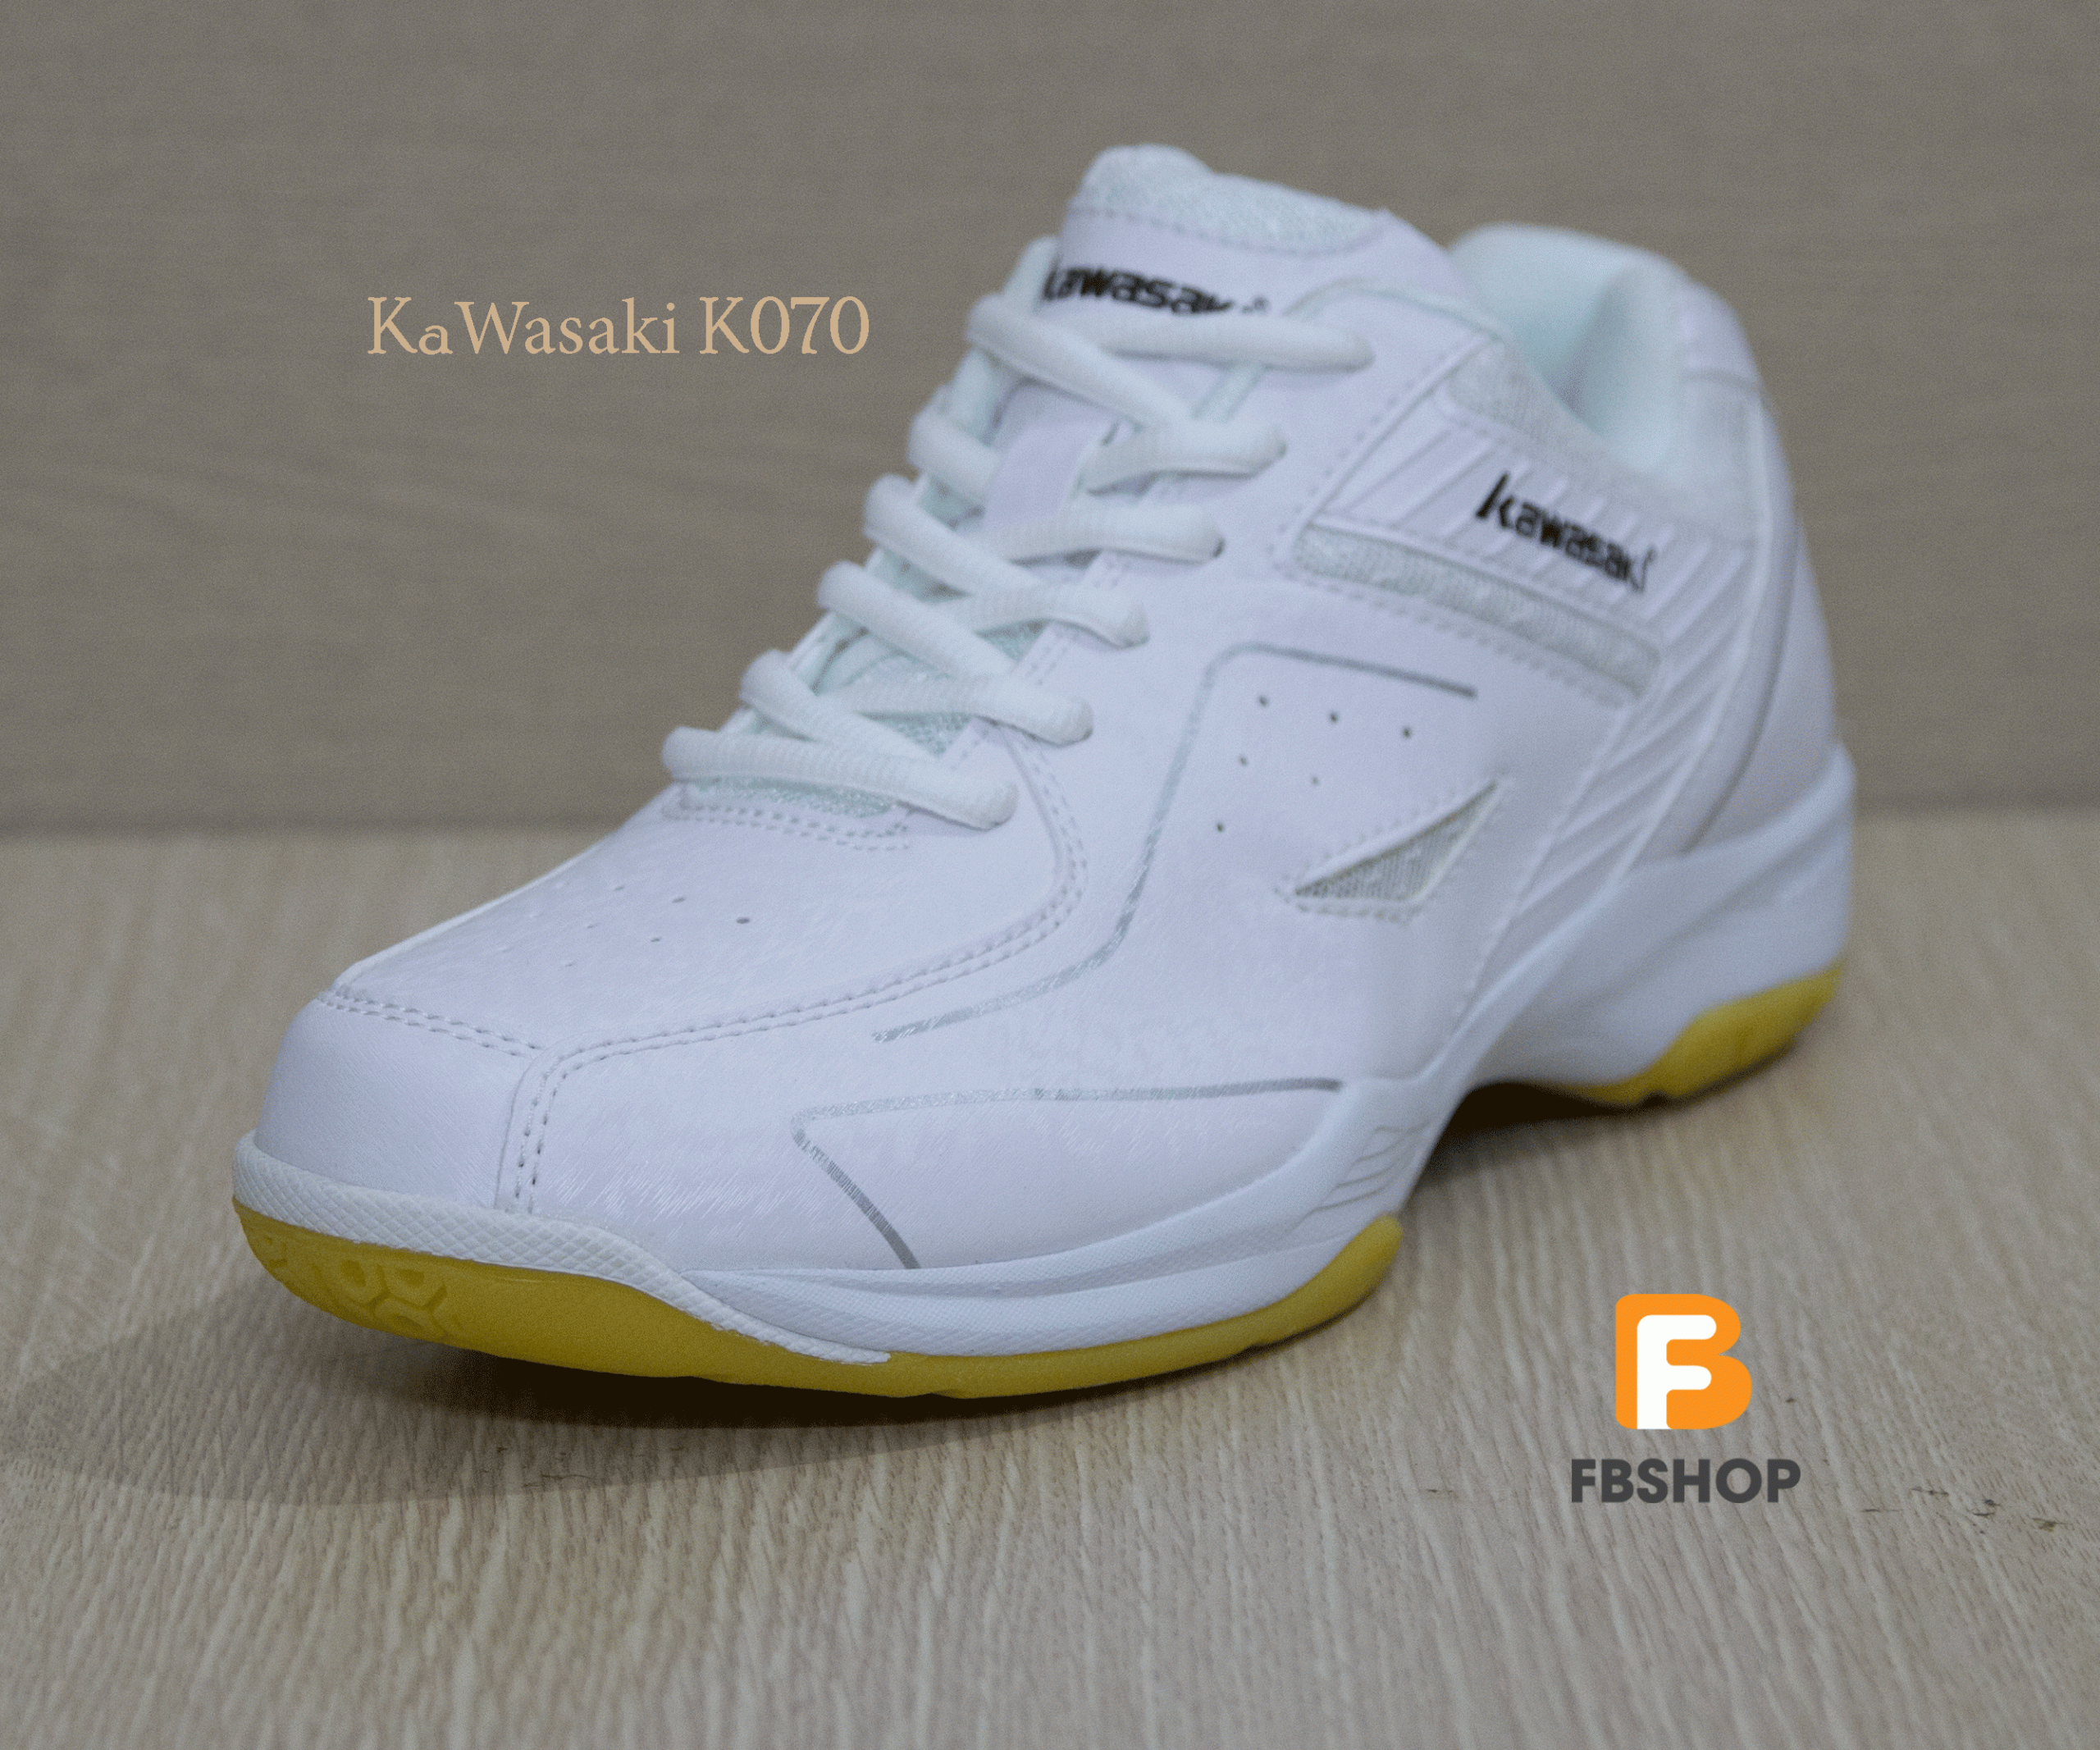 Giày cầu lông Kawasaki K070 trắng